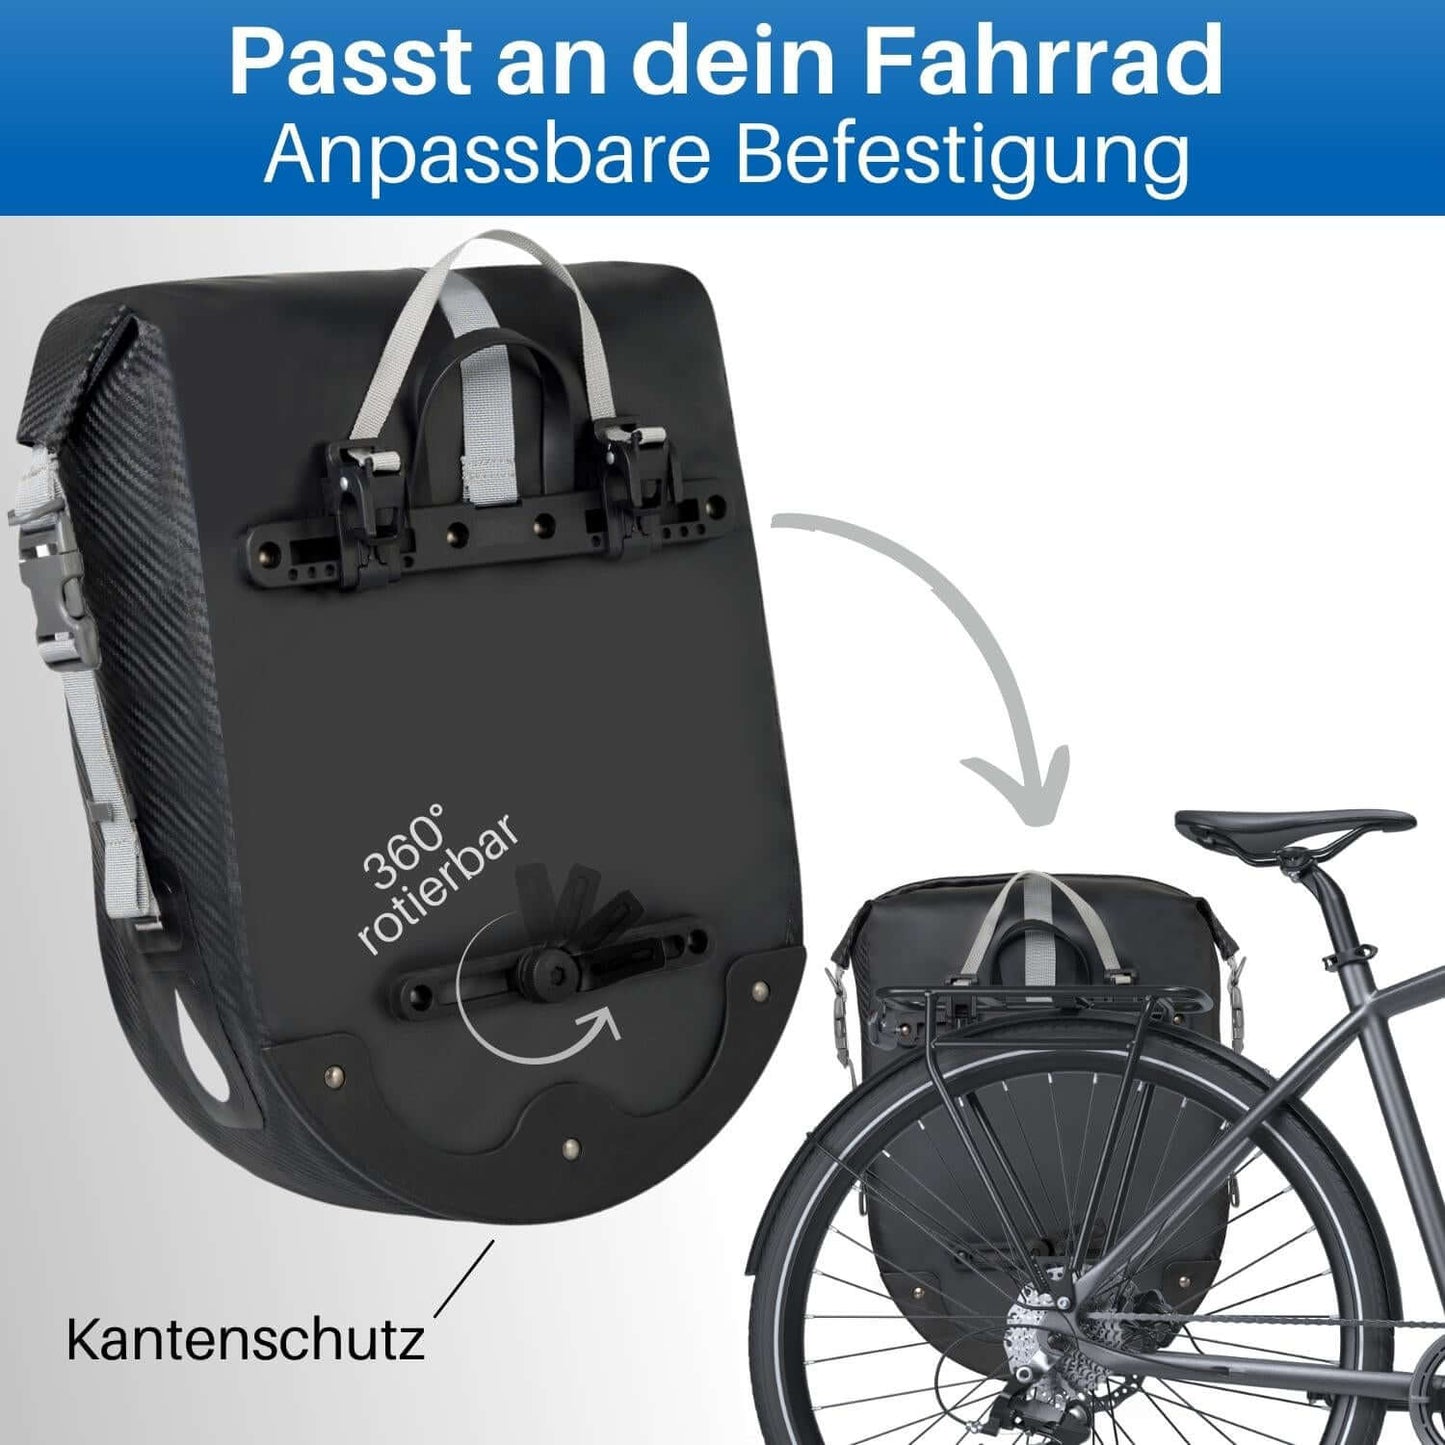 Die Radtasche für den Gepäckträger lässt sich einfach mit dem Schnell Schluss System am Fahrrad befestigen.